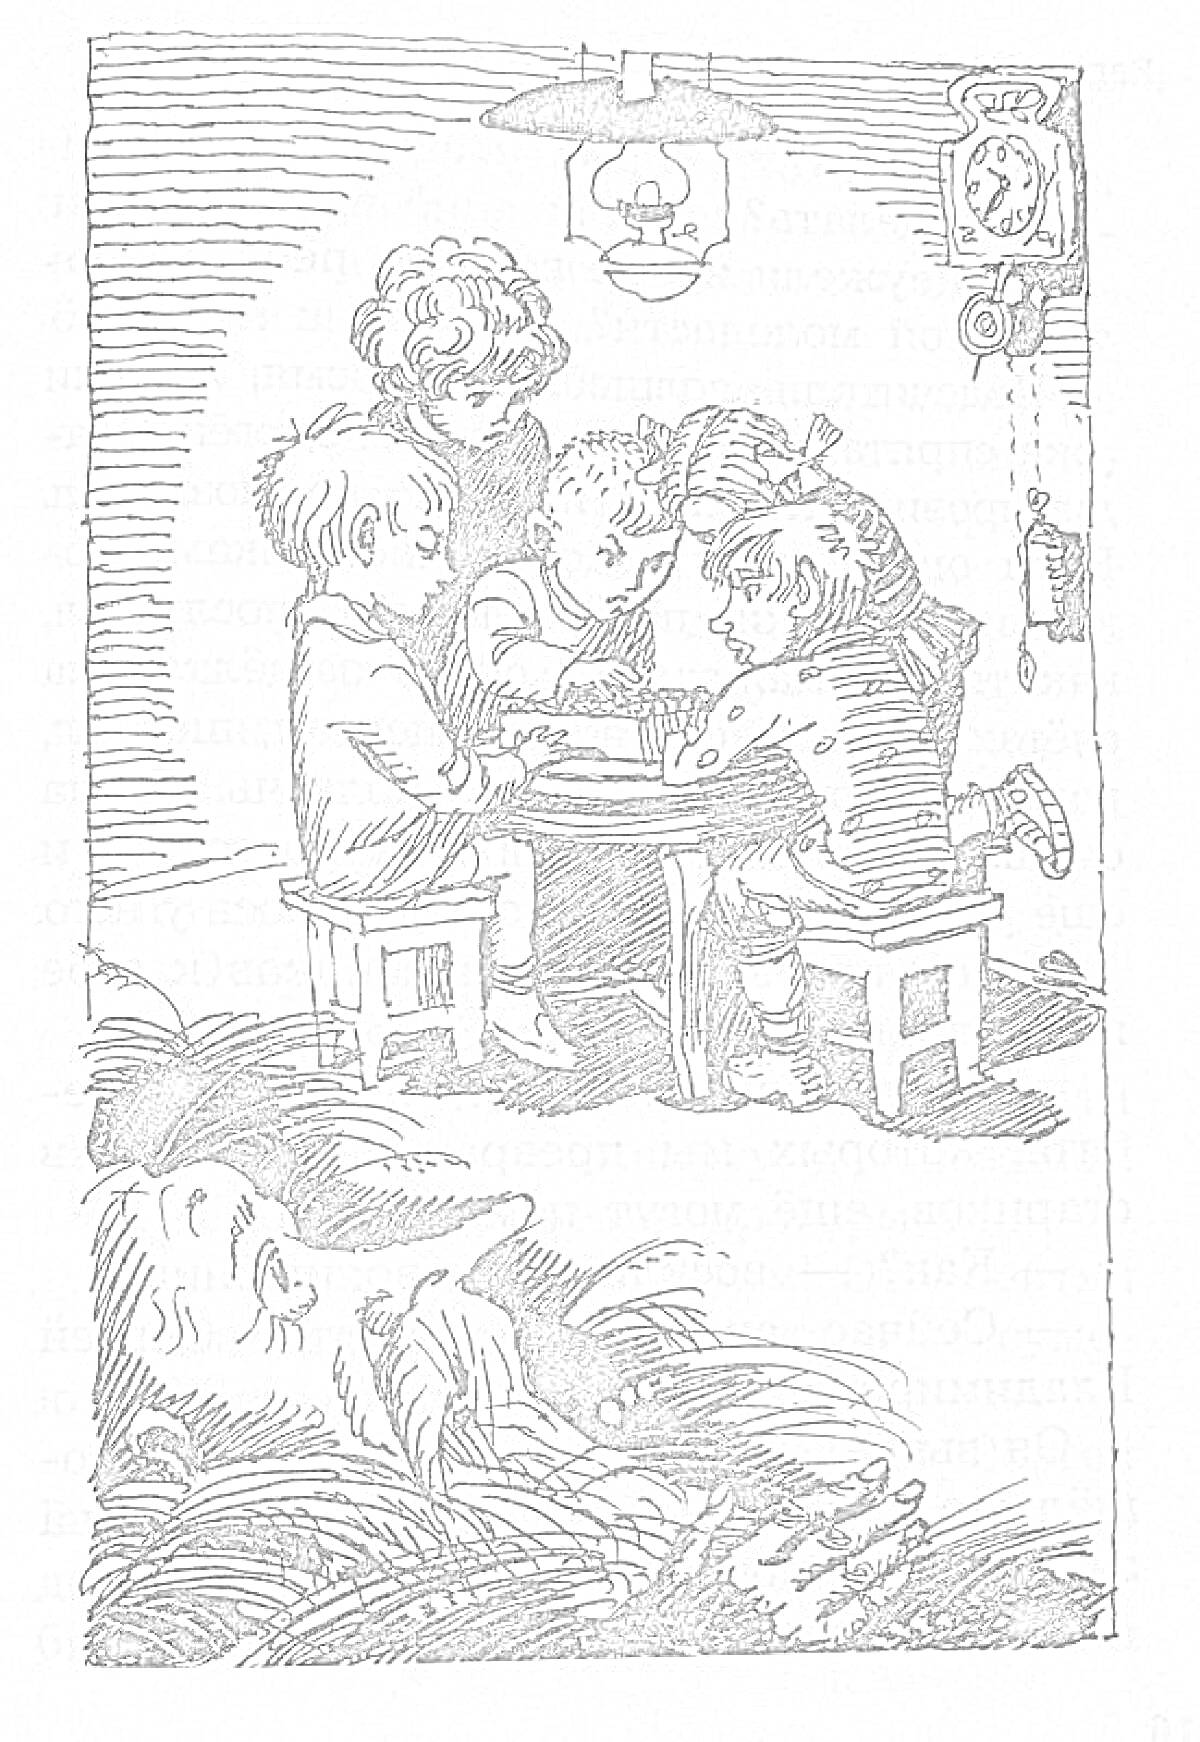 Раскраска Дети за столом под лампой и большая бородатая голова мужчины на переднем плане